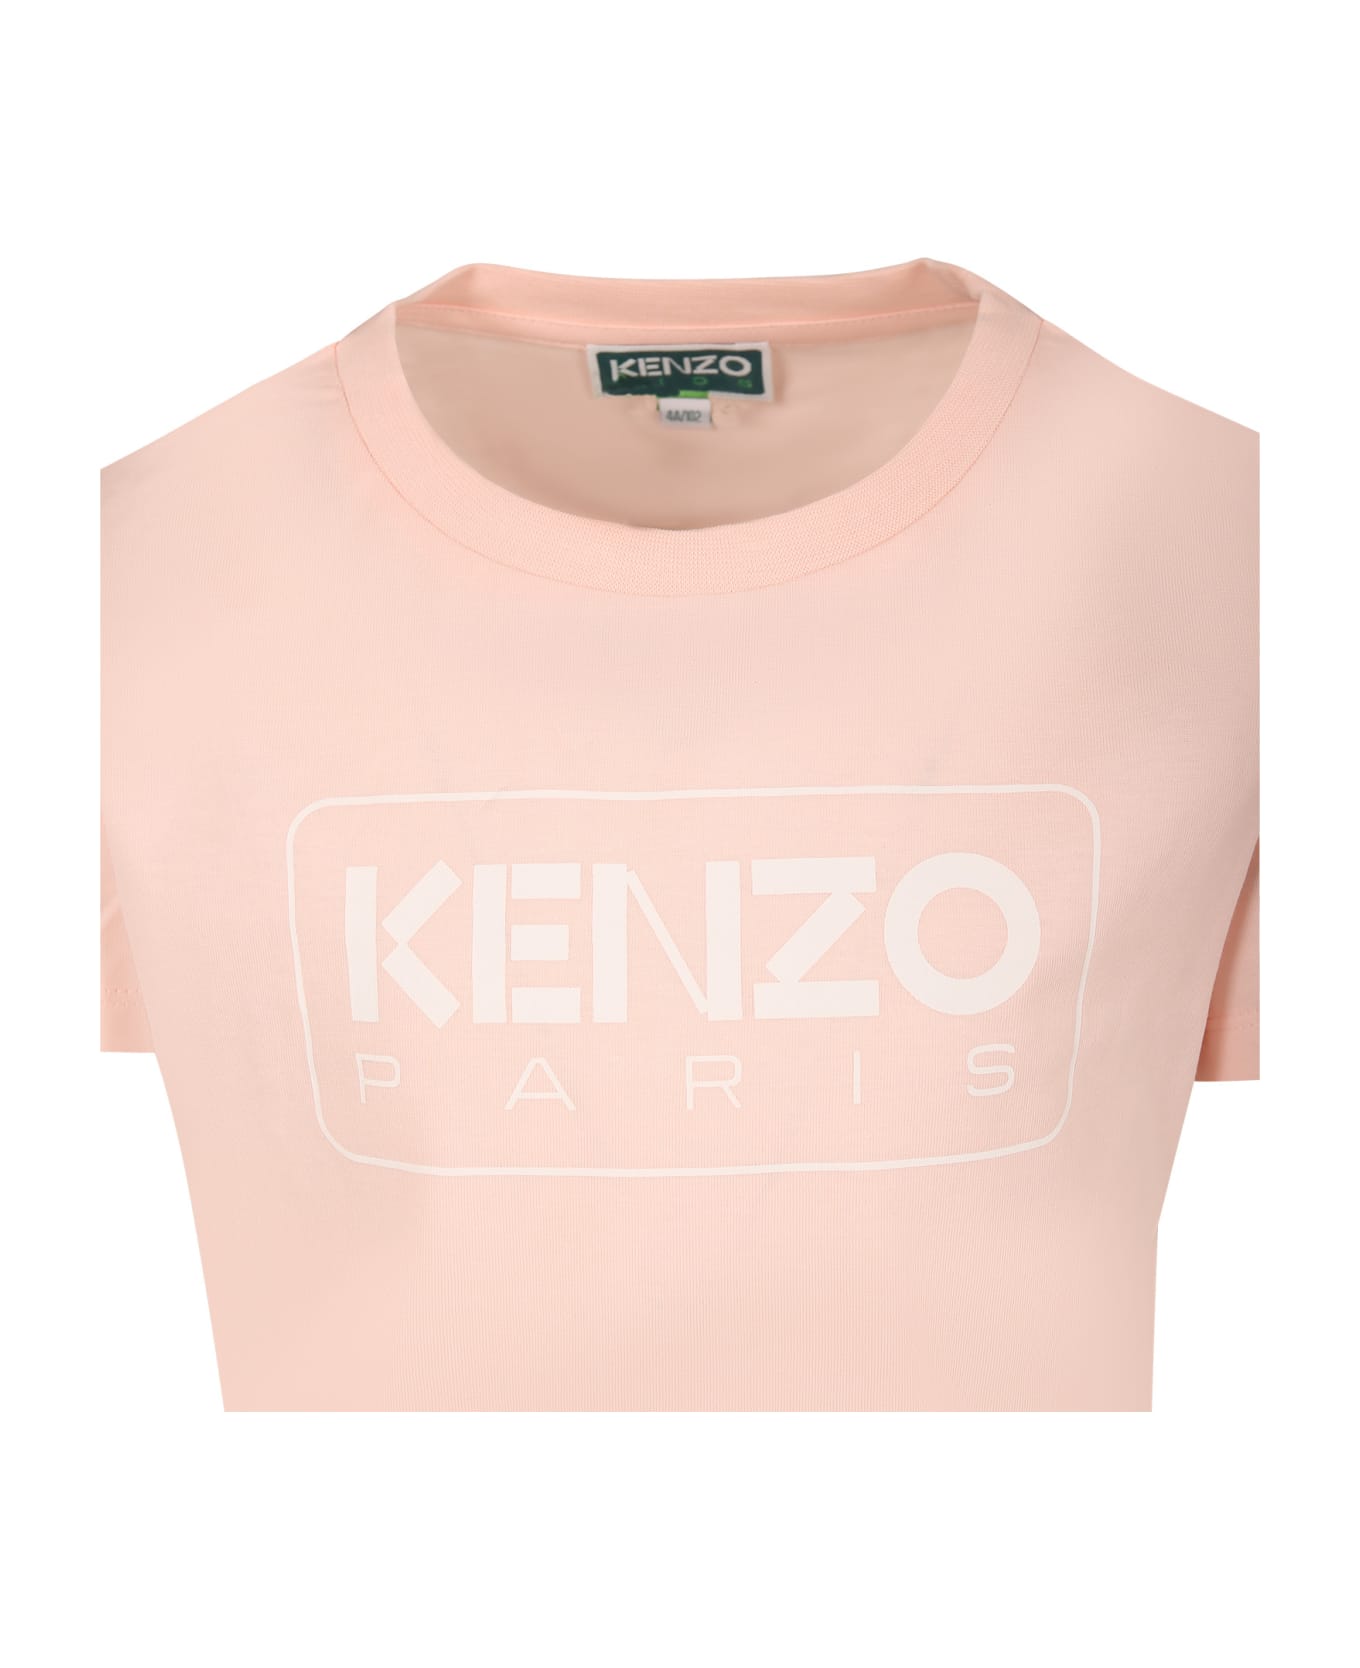 Kenzo Kids Pink T-shirt For Girl With Logo - T Rosa Velato